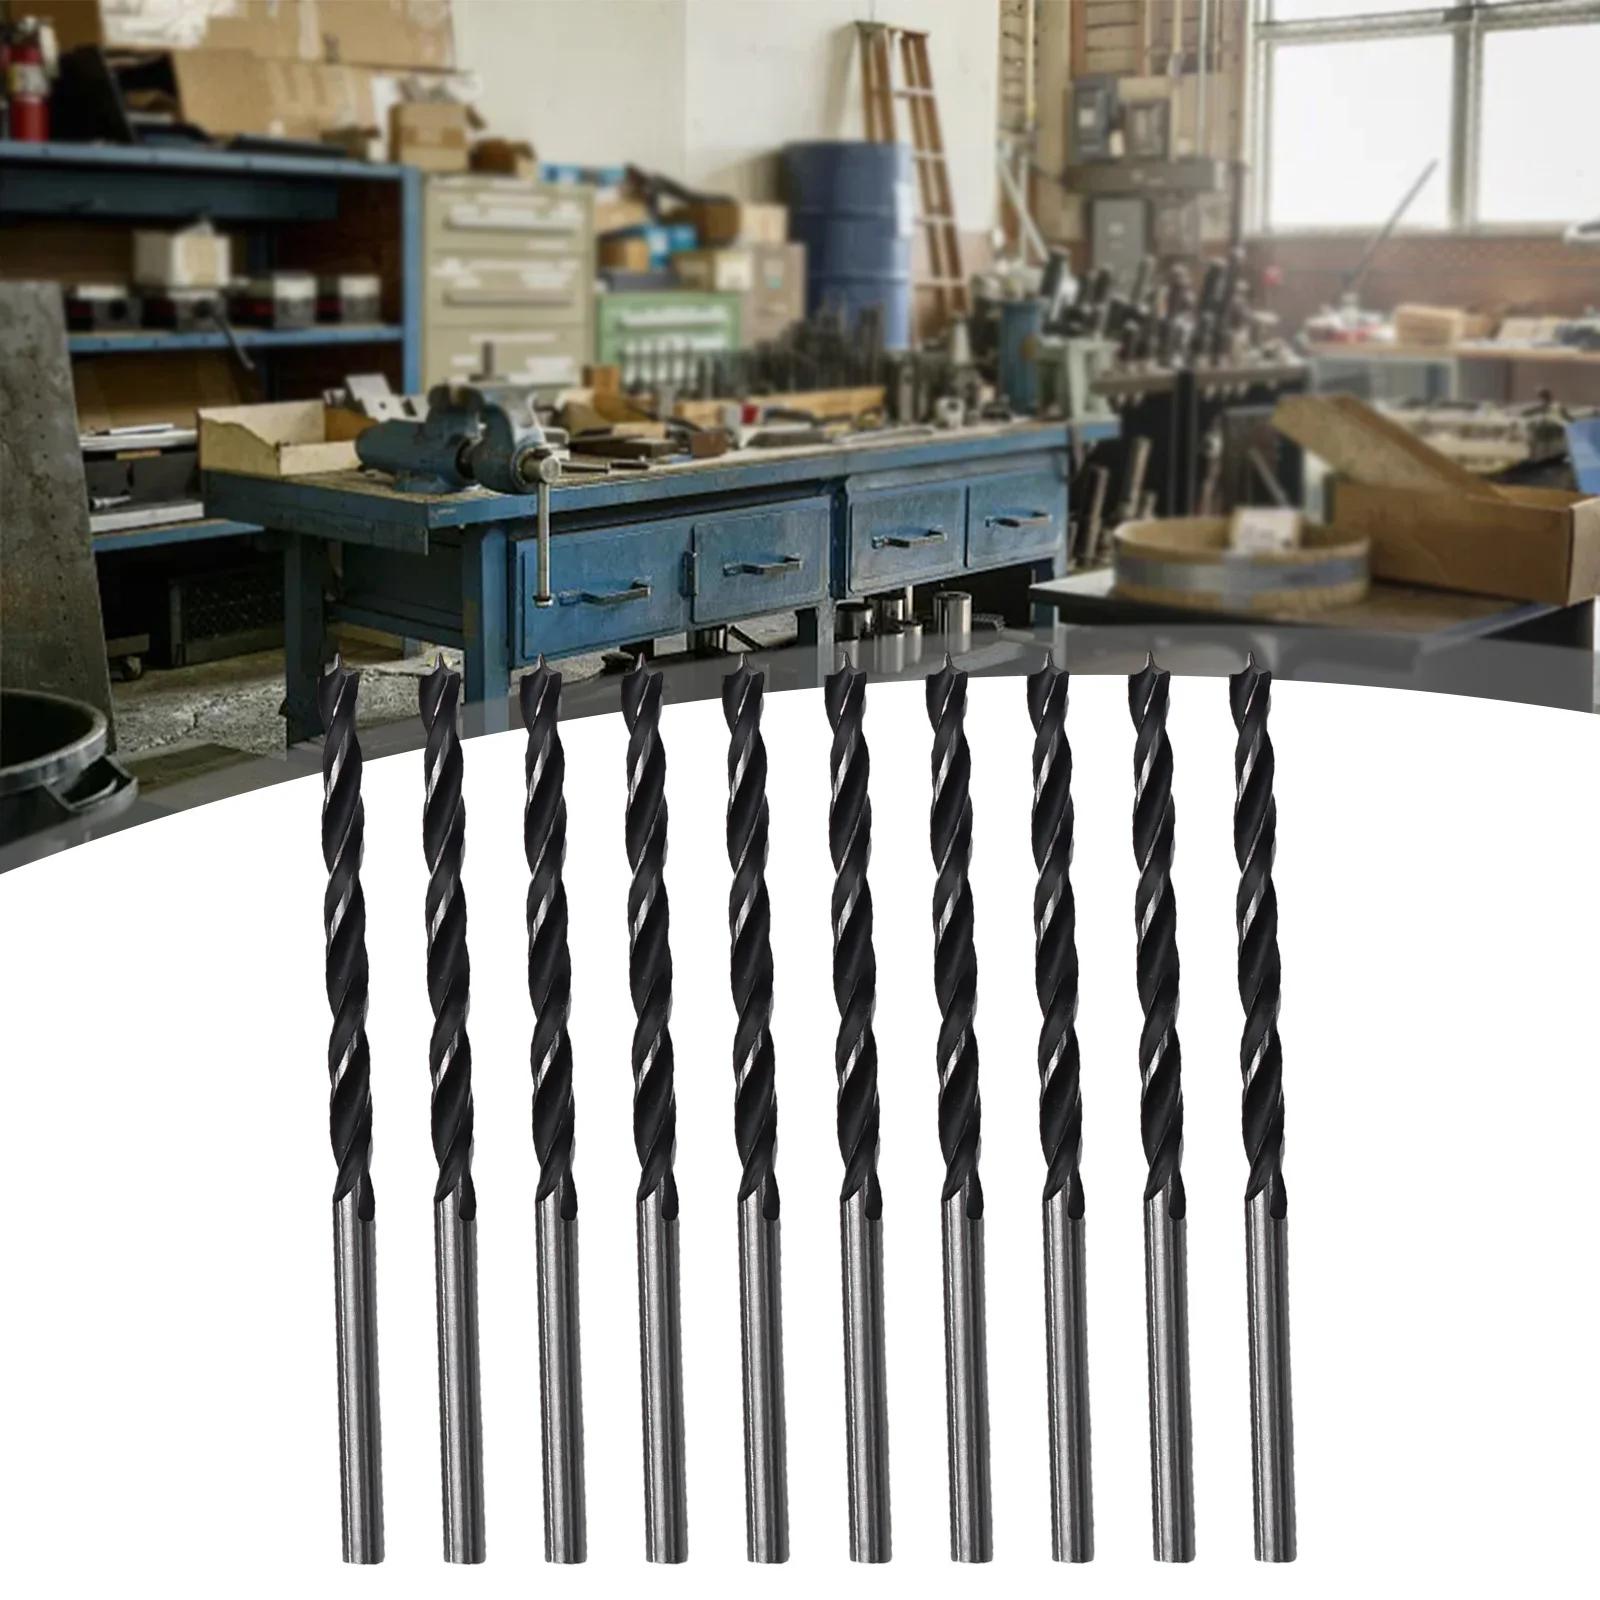 

10pcs Woodworking Spiral Drill Bit Kit 5mm/4mm/3mm Diameter Wood Drills With Center Point Wood Drill Bit Set